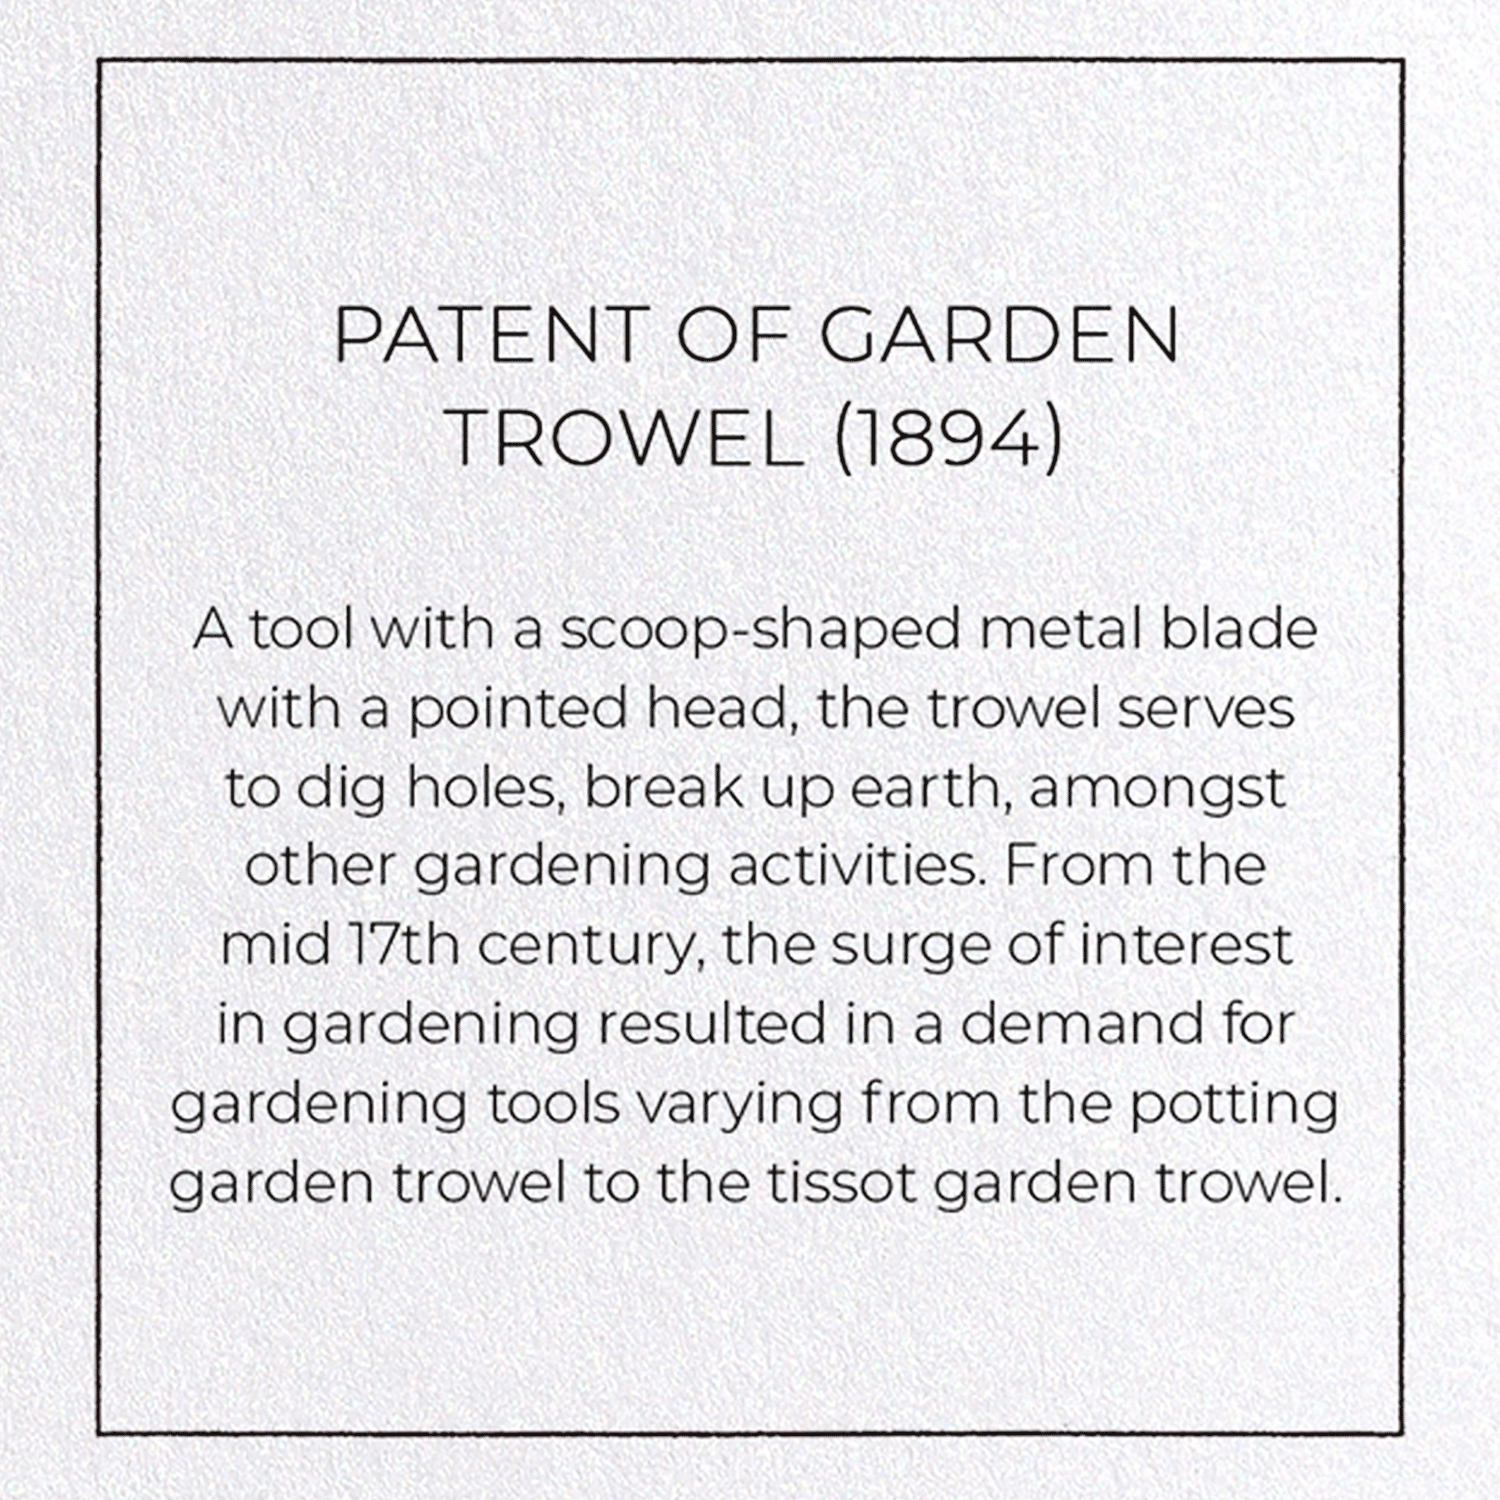 PATENT OF GARDEN TROWEL (1894)